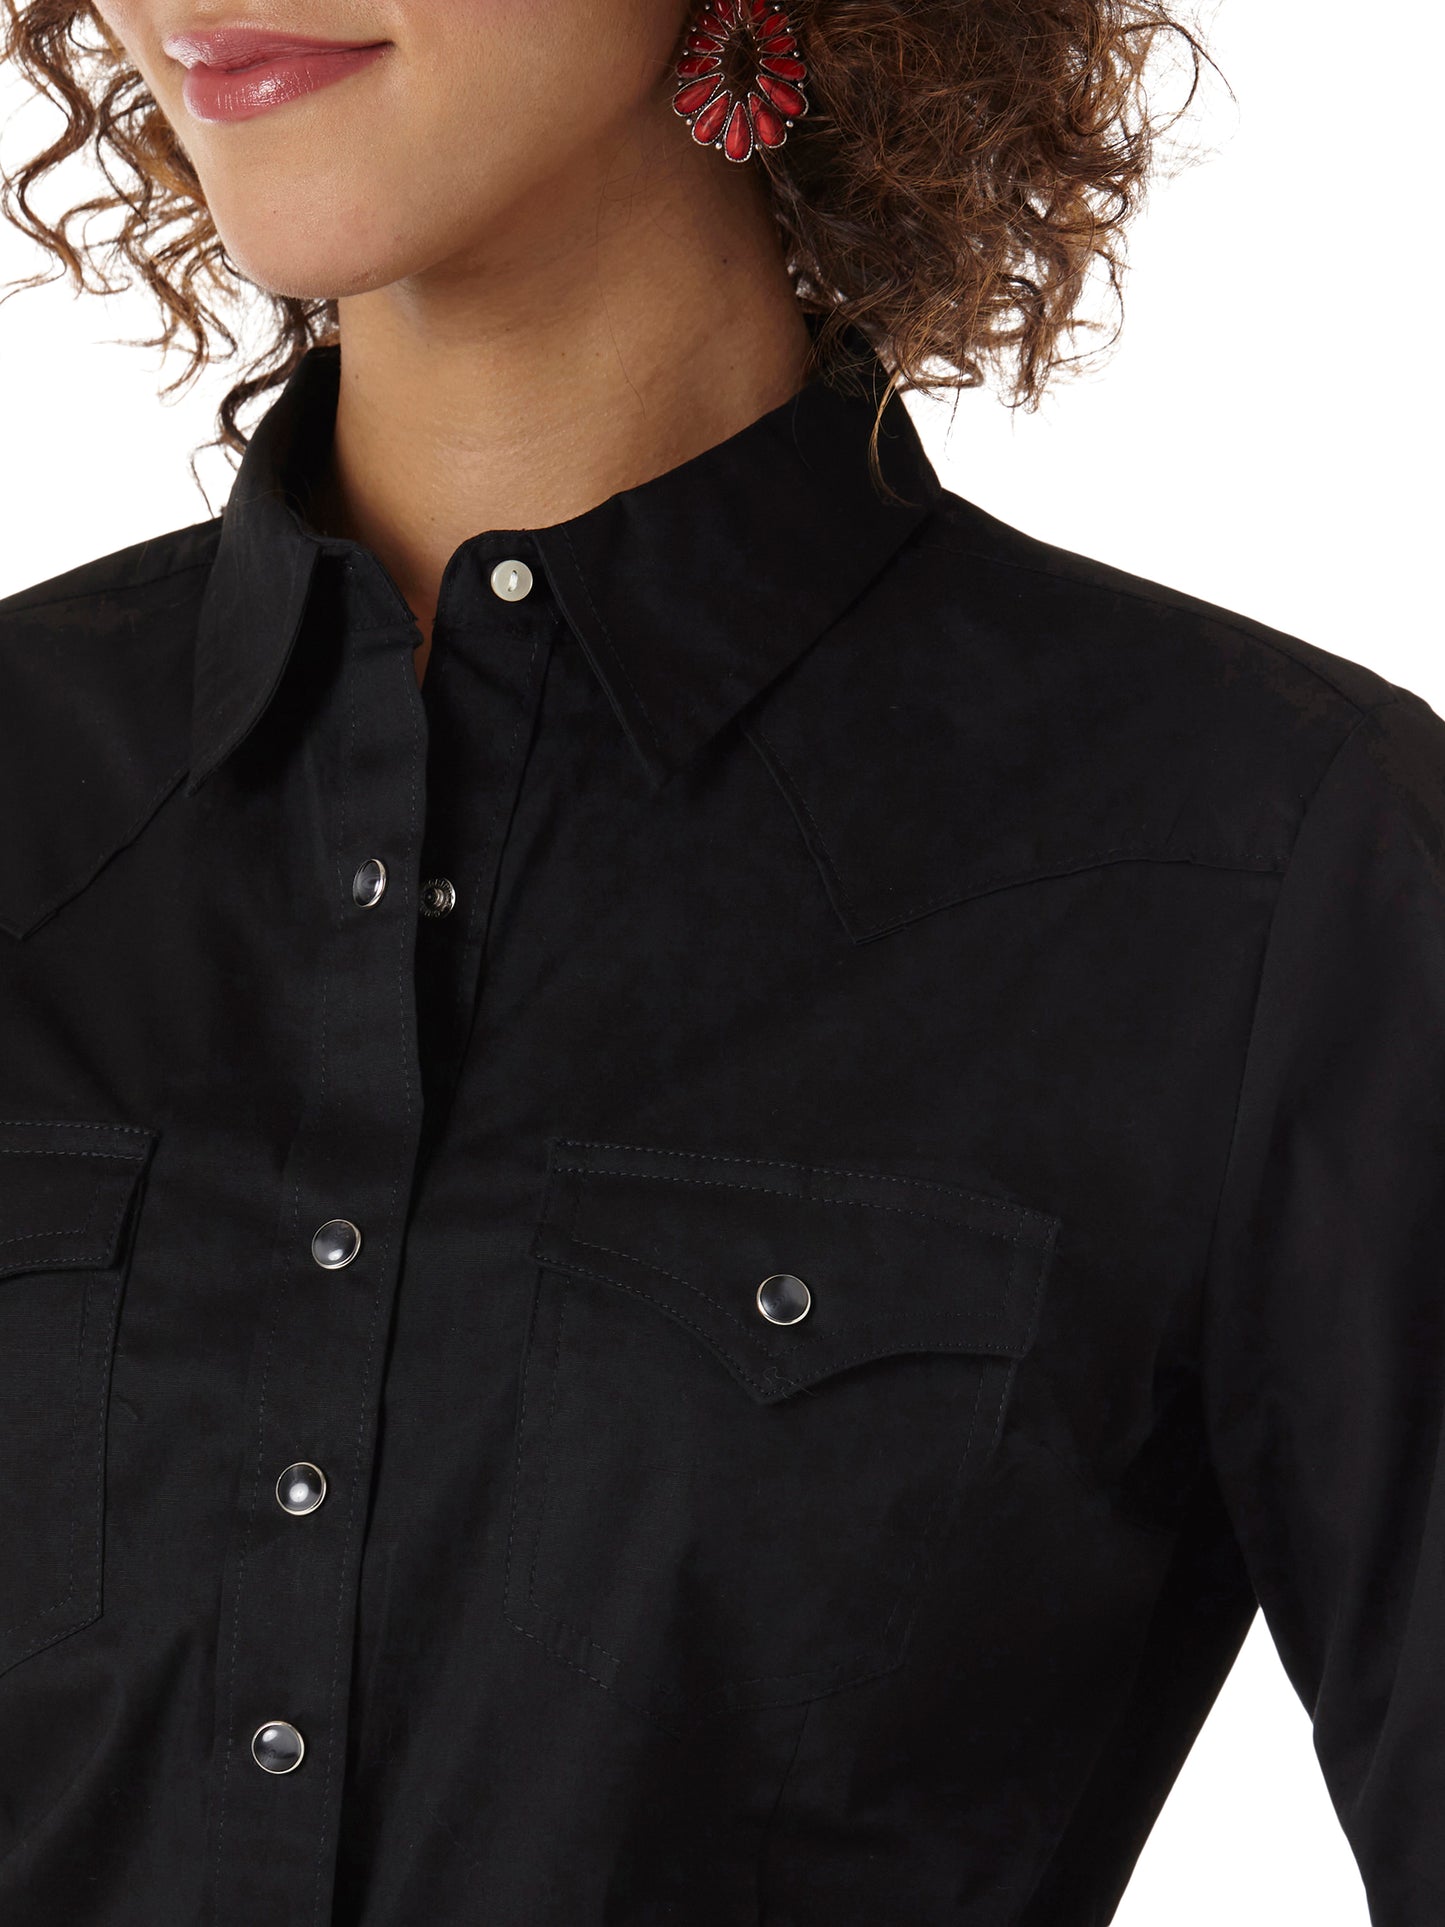 Wrangler Western Long Sleeve Solid Top - Black